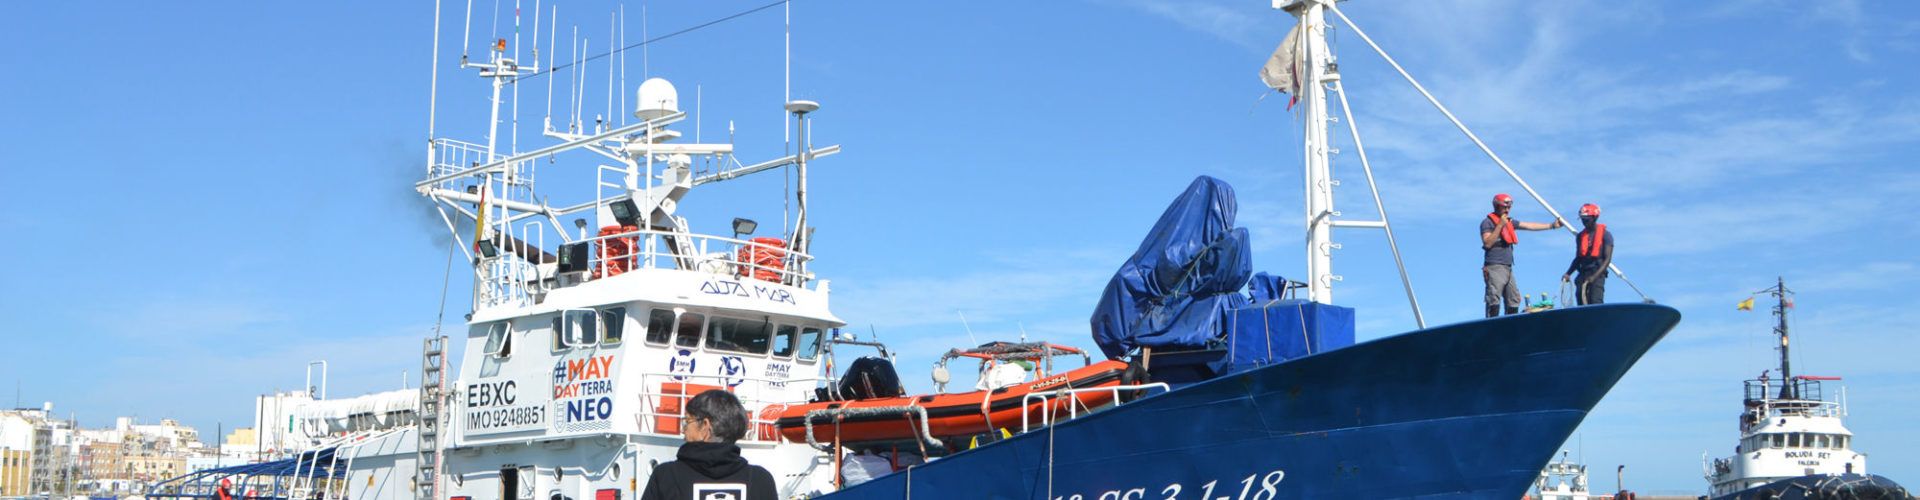 Un altre vaixell de rescat atraca al port de Vinaròs, aquesta vegada procedent de Lampedusa